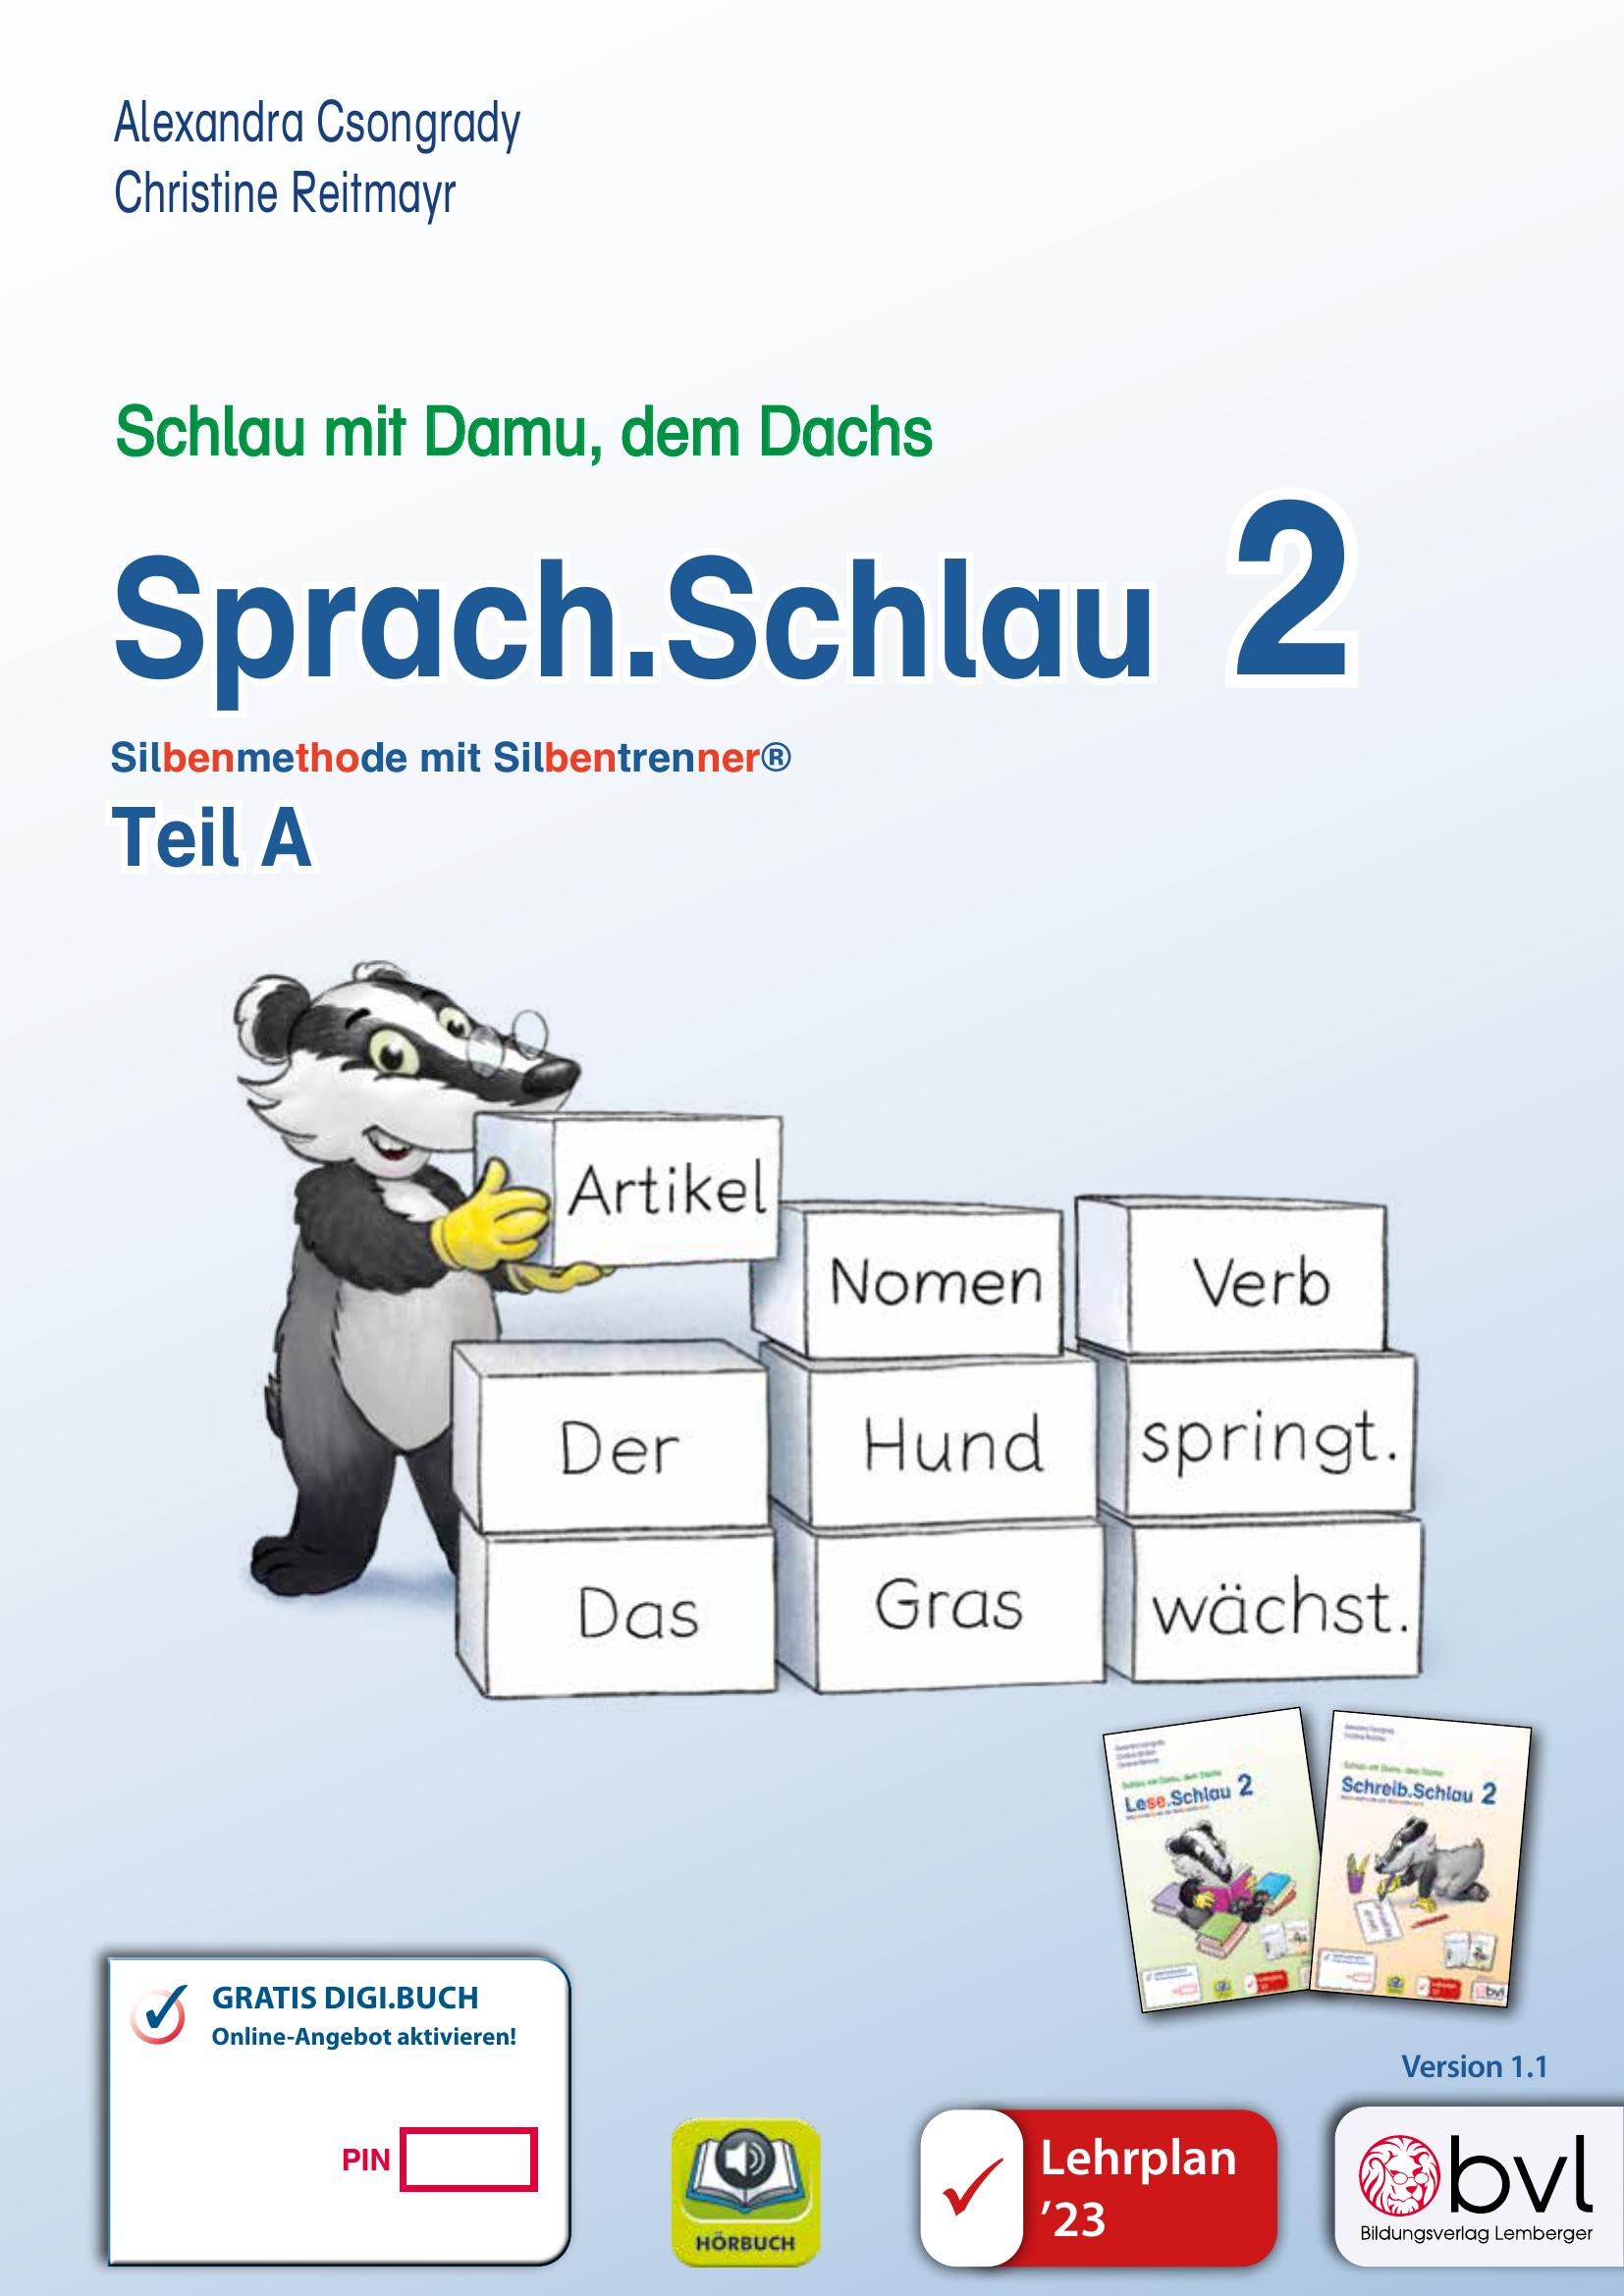 Schlau2_Sprach.Schlau 2 – Teil A LP‘23 v1.1